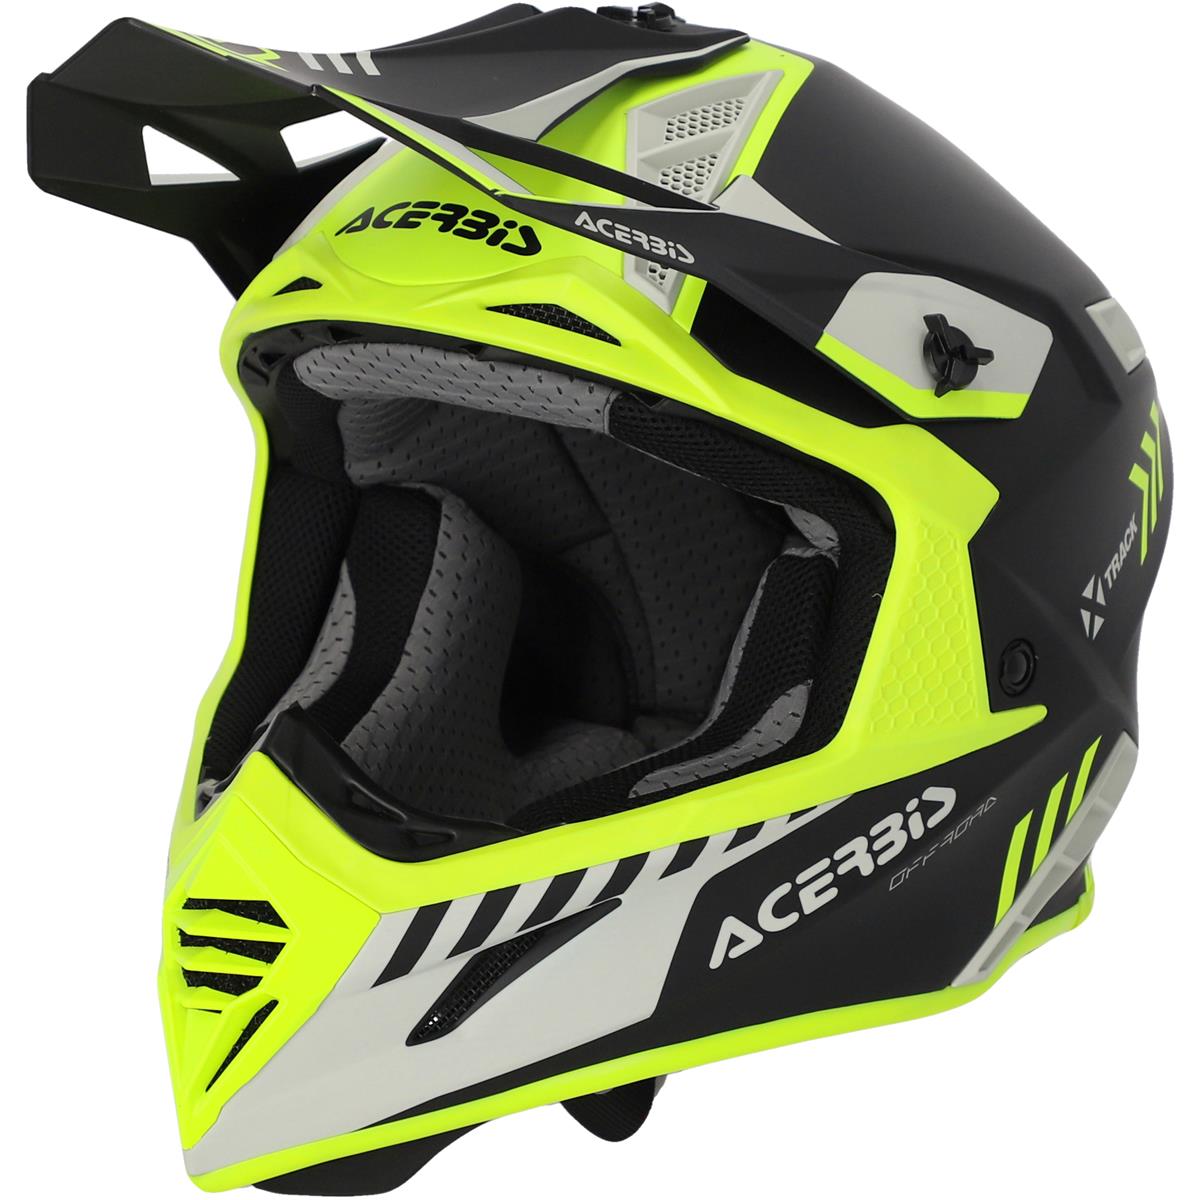 Acerbis Motocross-Helm X-Track Mips 22-06 Neongelb/Schwarz - Matt